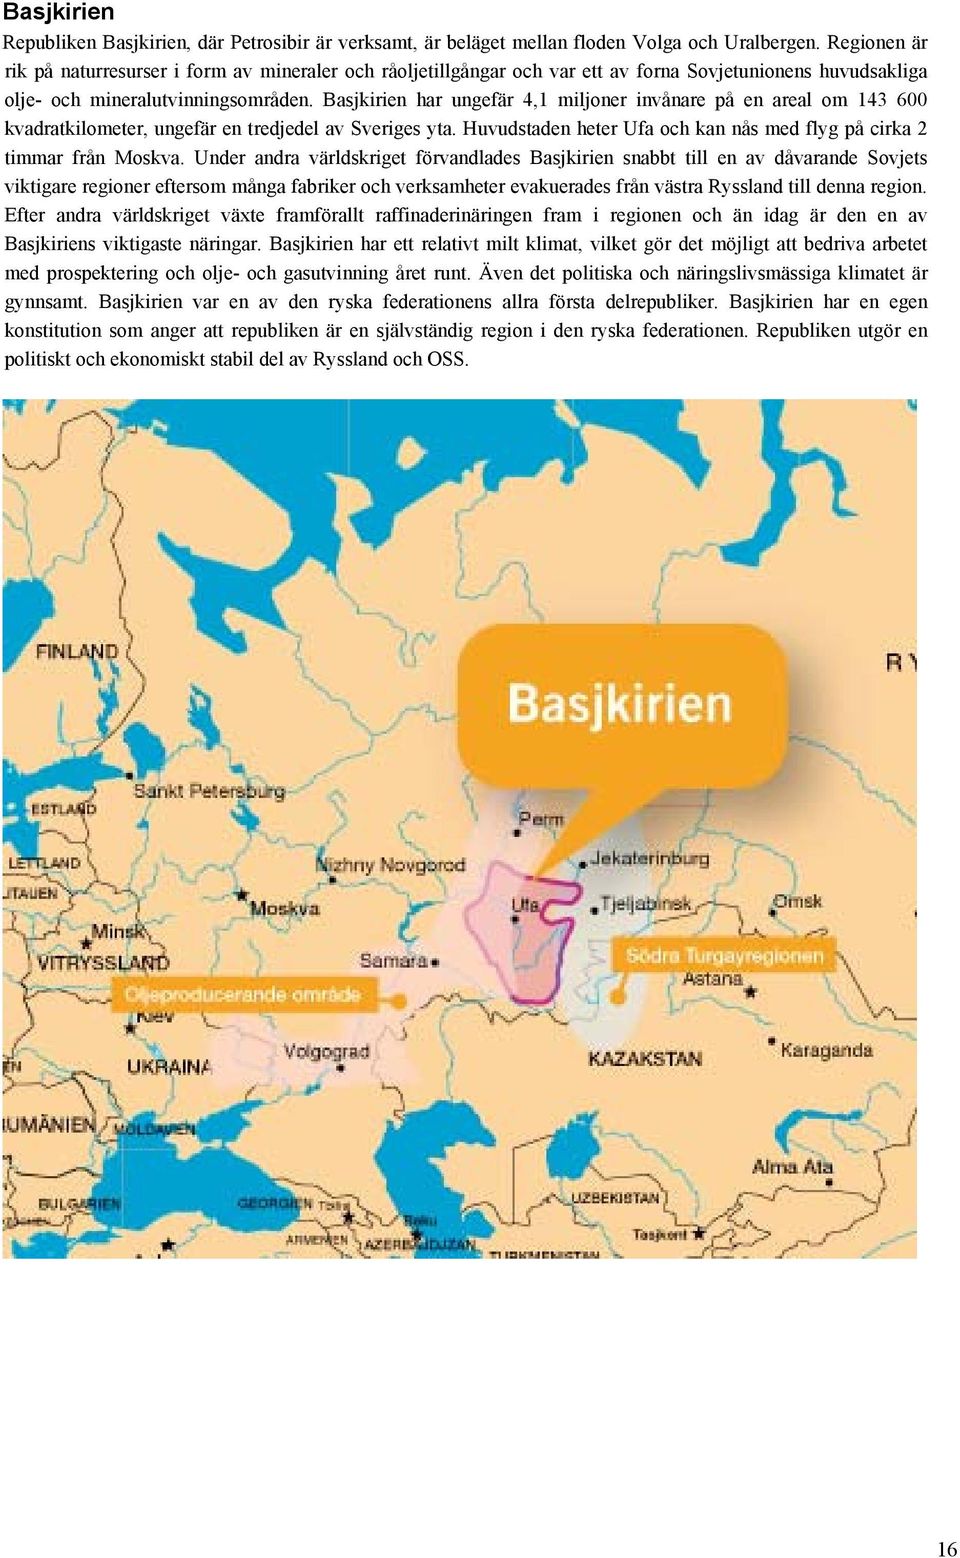 Basjkirien har ungefär 4,1 miljoner invånare på en areal om 143 600 kvadratkilometer, ungefär en tredjedel av Sveriges yta. Huvudstaden heter Ufa och kan nås med flyg på cirka 2 timmar från Moskva.